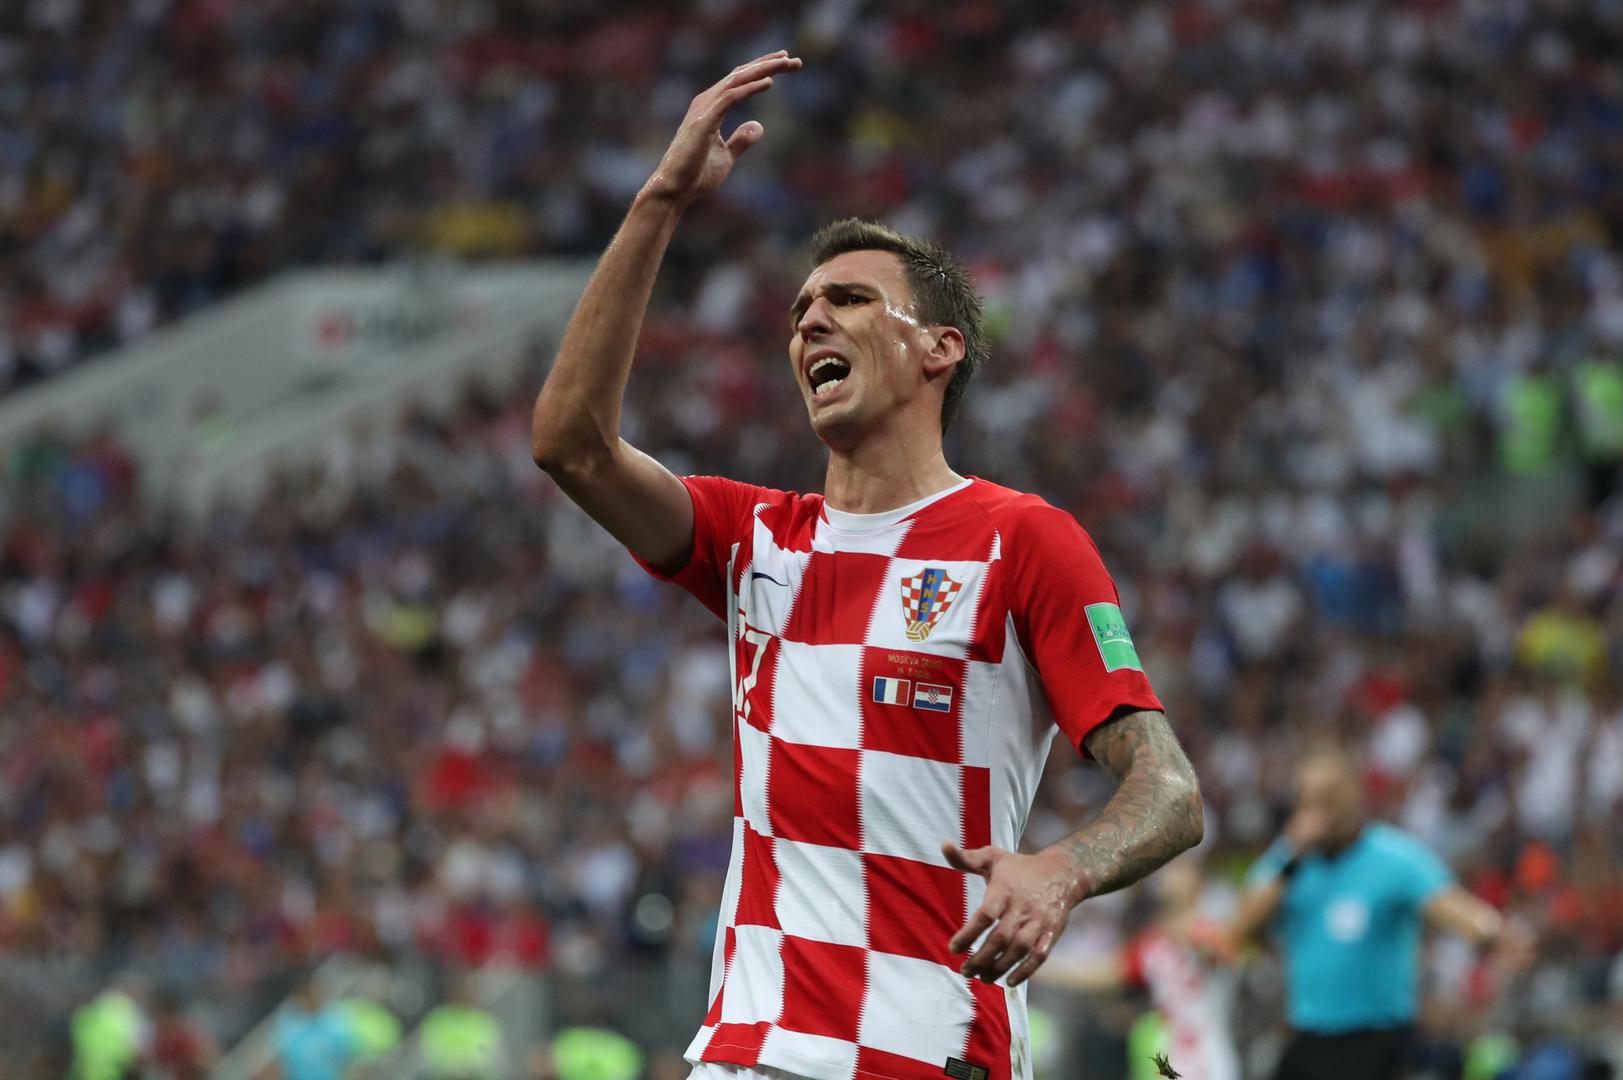 Hrvatski navijači se nisu predavali, baš kao niti nogometaši, niti u trenutku kada su Francuzi poveli 4-1. Mario Mandžukić je u 69. minuti smanjio na 2-4 i vratio nadu što je bio novi signal za buđenje tribina. 

